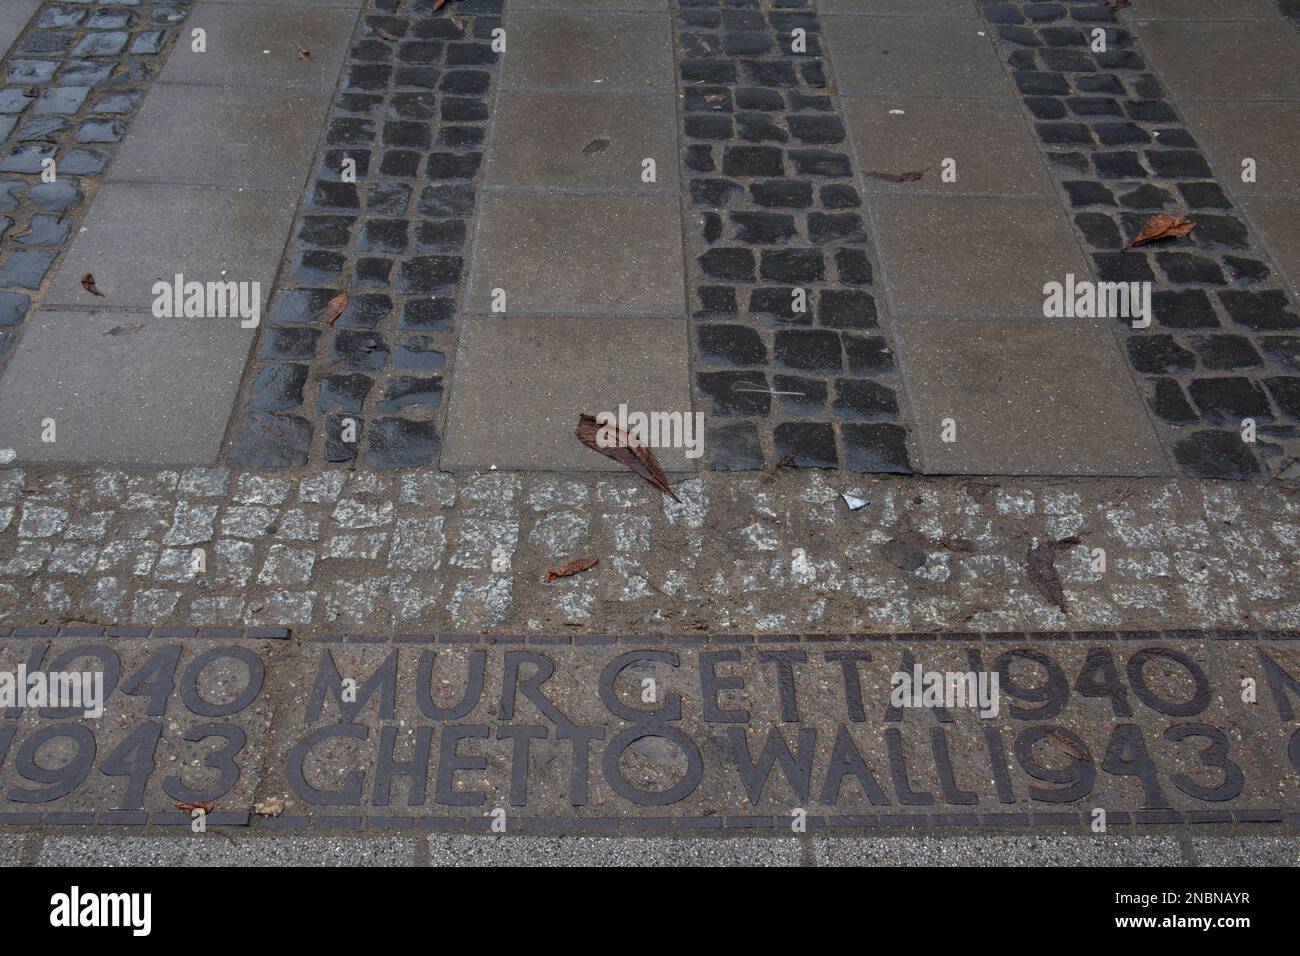 Les bornes du ghetto de Varsovie - plaques commémoratives et lignes de démarcation - qui marquent le périmètre maximum de l'ancien ghetto de Varsovie, Pologne Banque D'Images